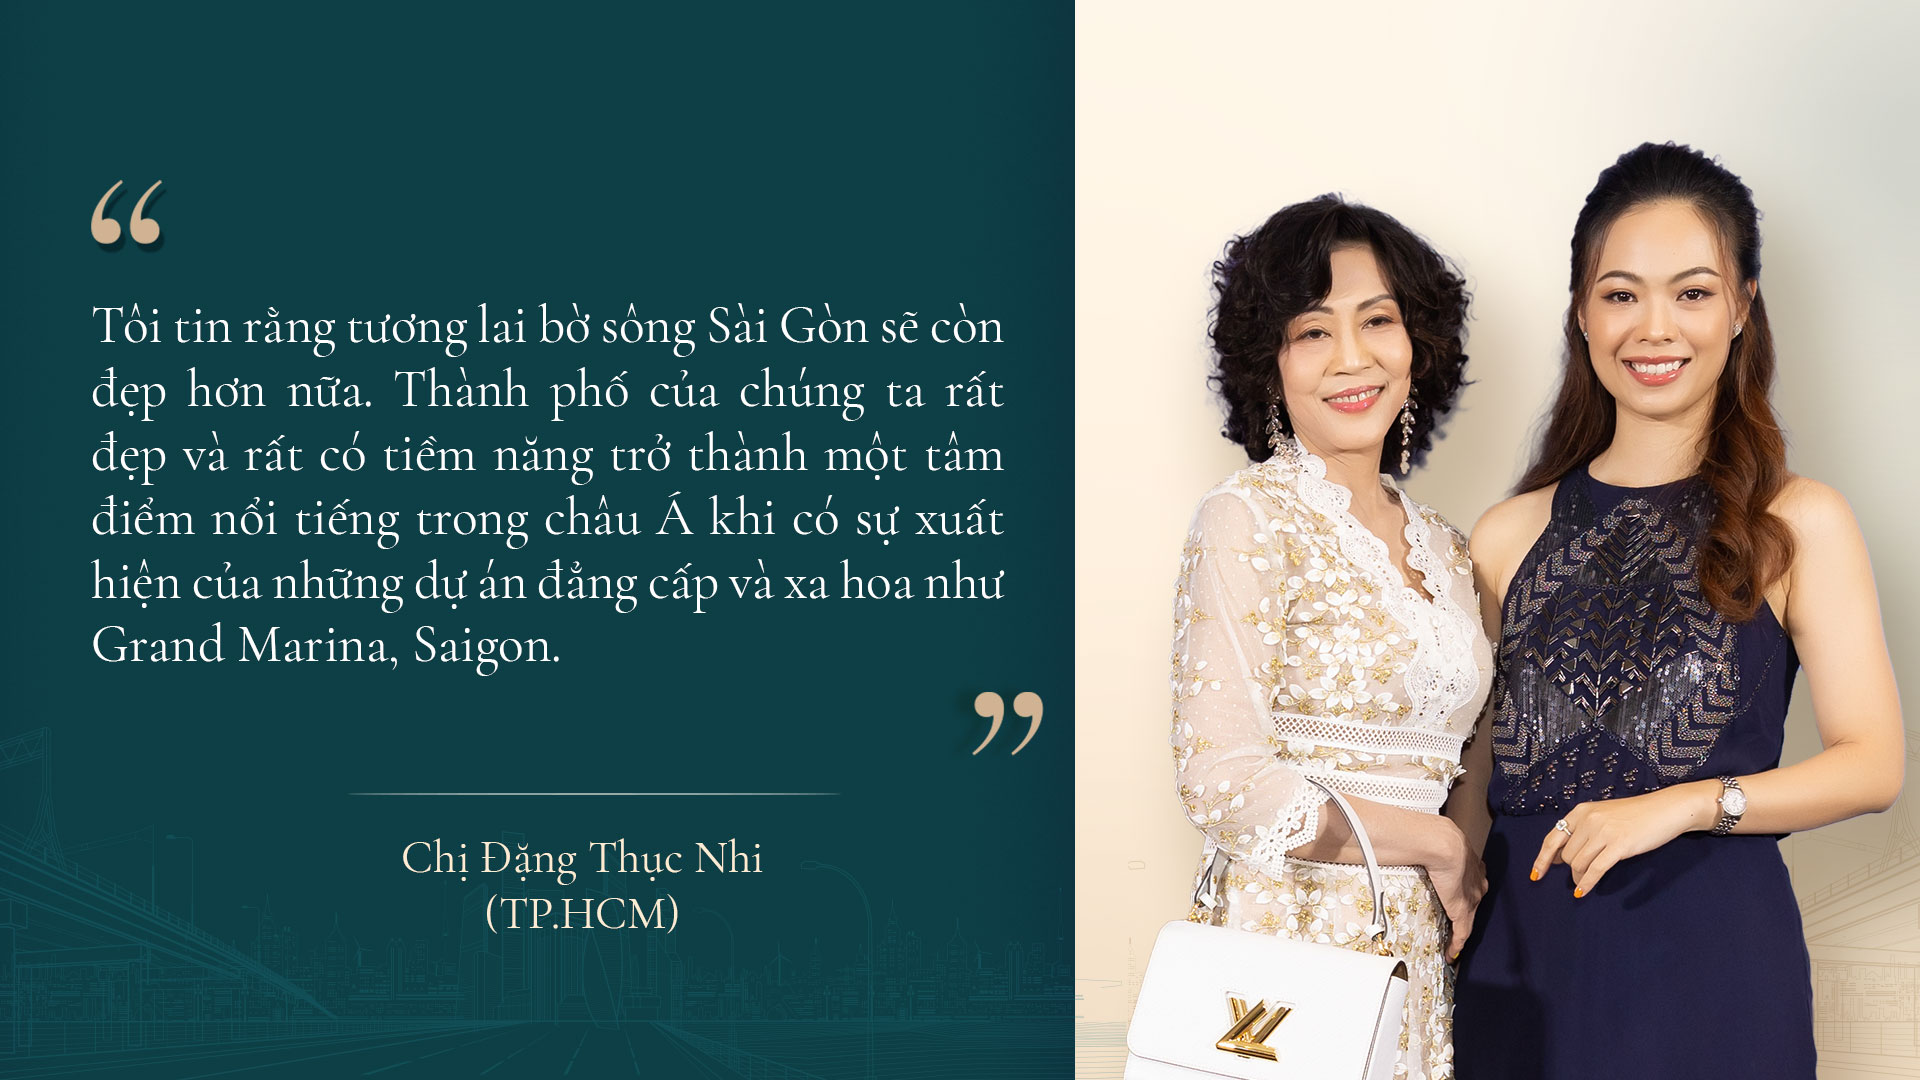 Chị Đặng Thục Nhi (TPHCM) bày tỏ kỳ vọng về tương lai của Grand Marina, Saigon và TPHCM - Ảnh: Masterise Group